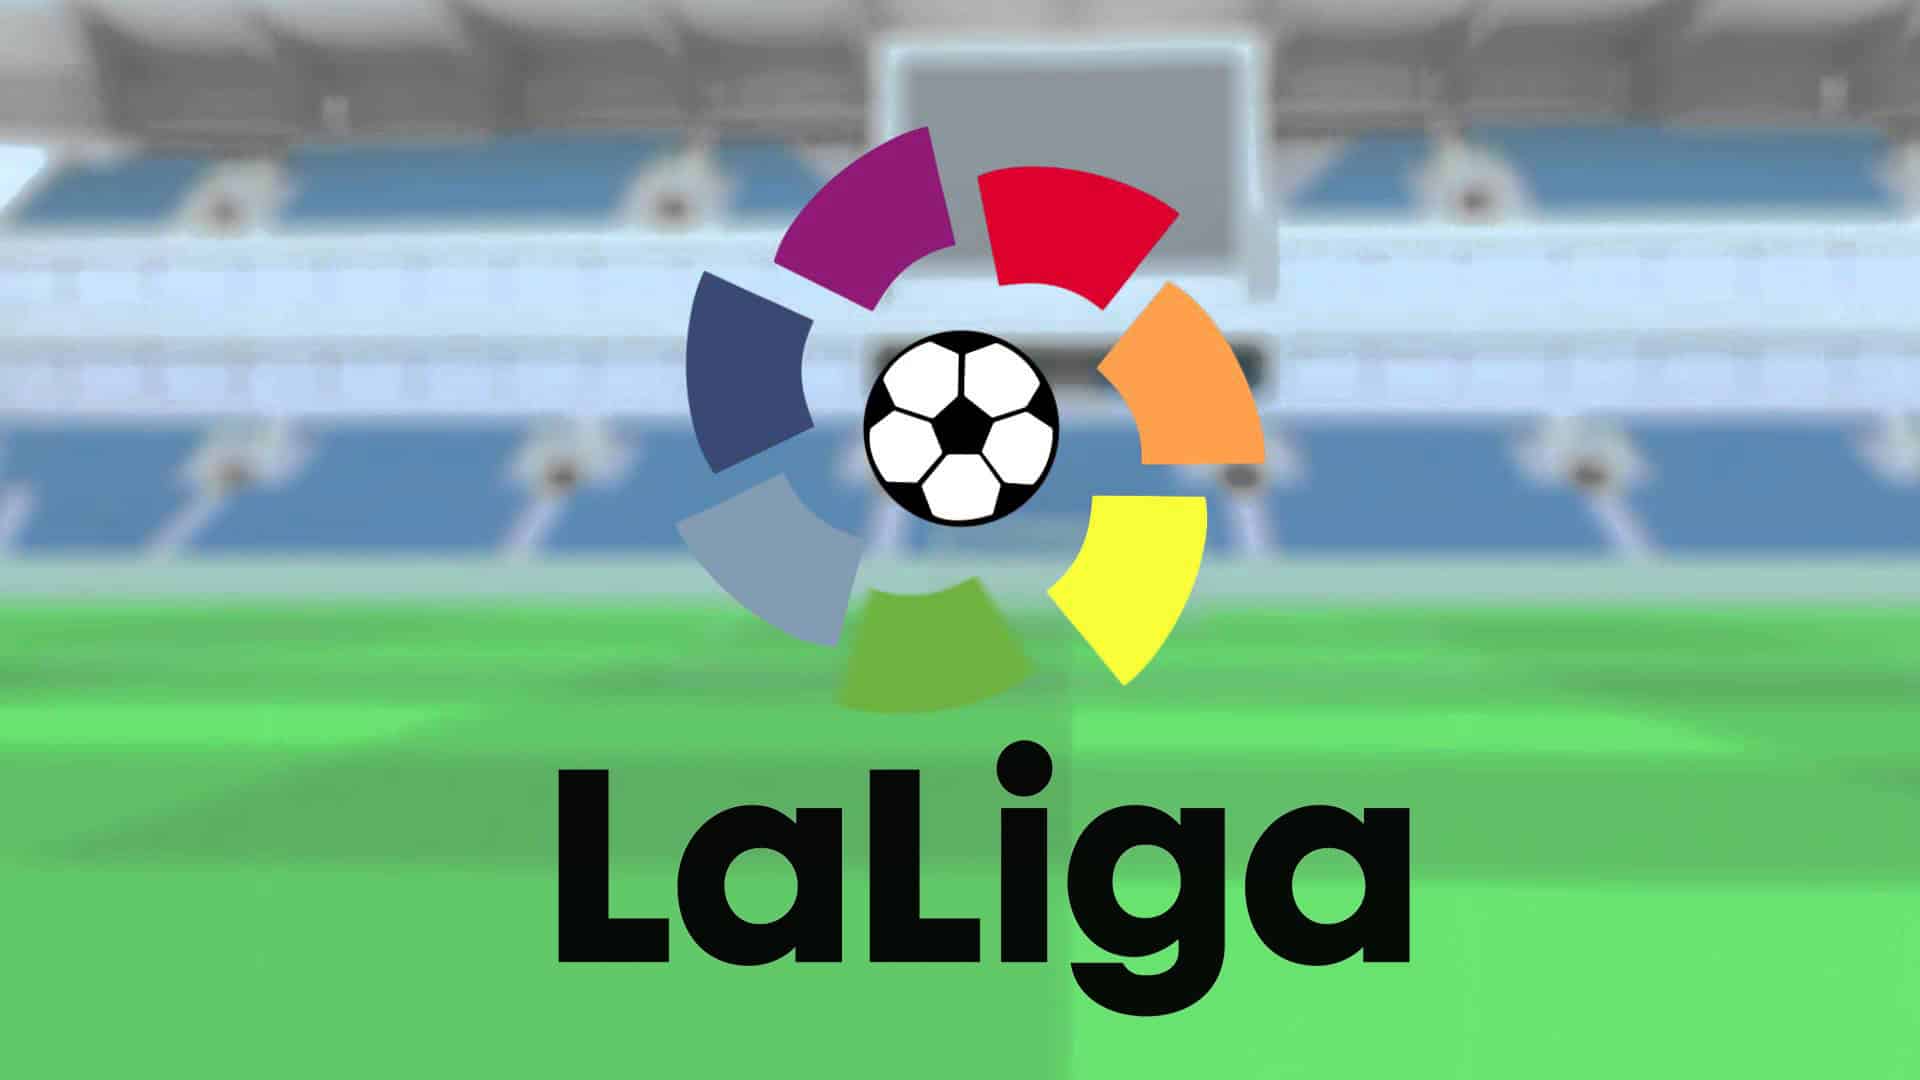 Il pallone usato ne la Liga 2017-18